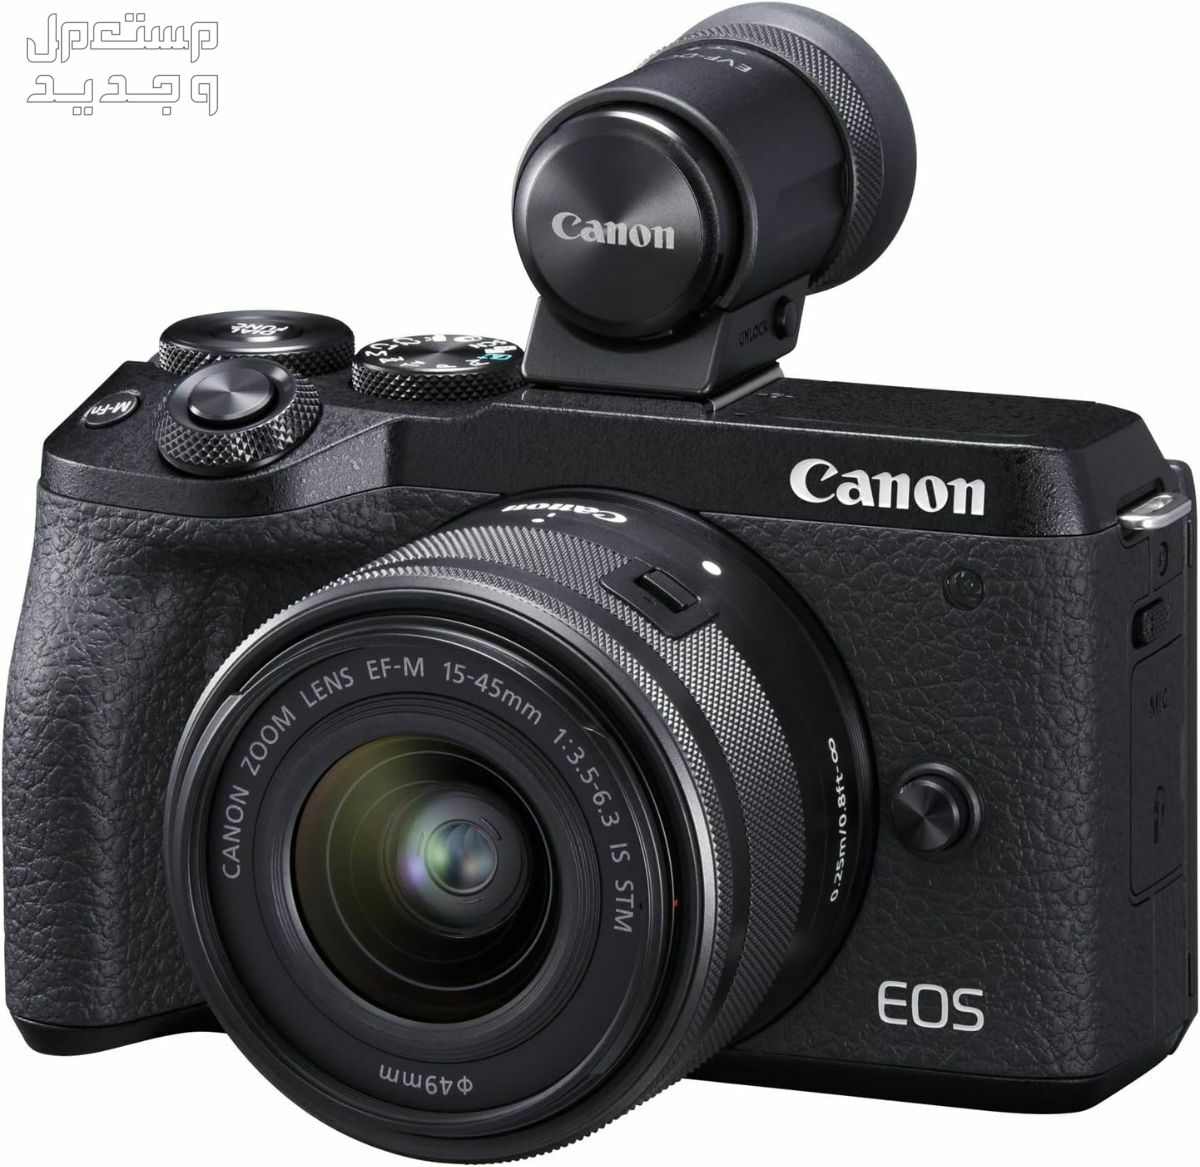 سعر ومميزات ومواصفات أرخص 5 كاميرات تصوير من كانون في السودان كاميرا Canon EOS M6 Mark II